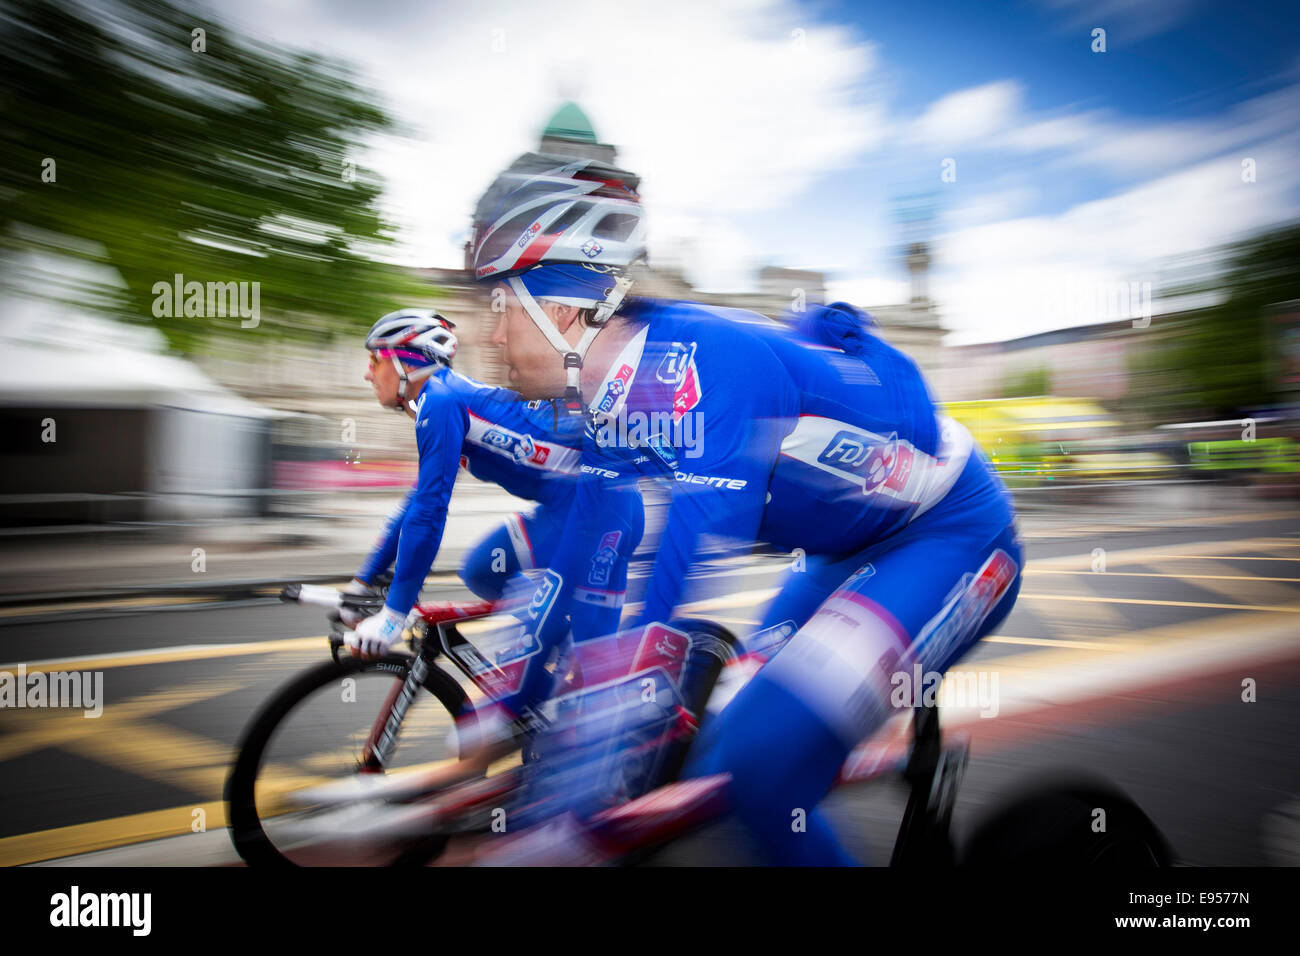 Giro d'Itala-Ziellinie in Belfast, Nordirland 2014 Stockfoto